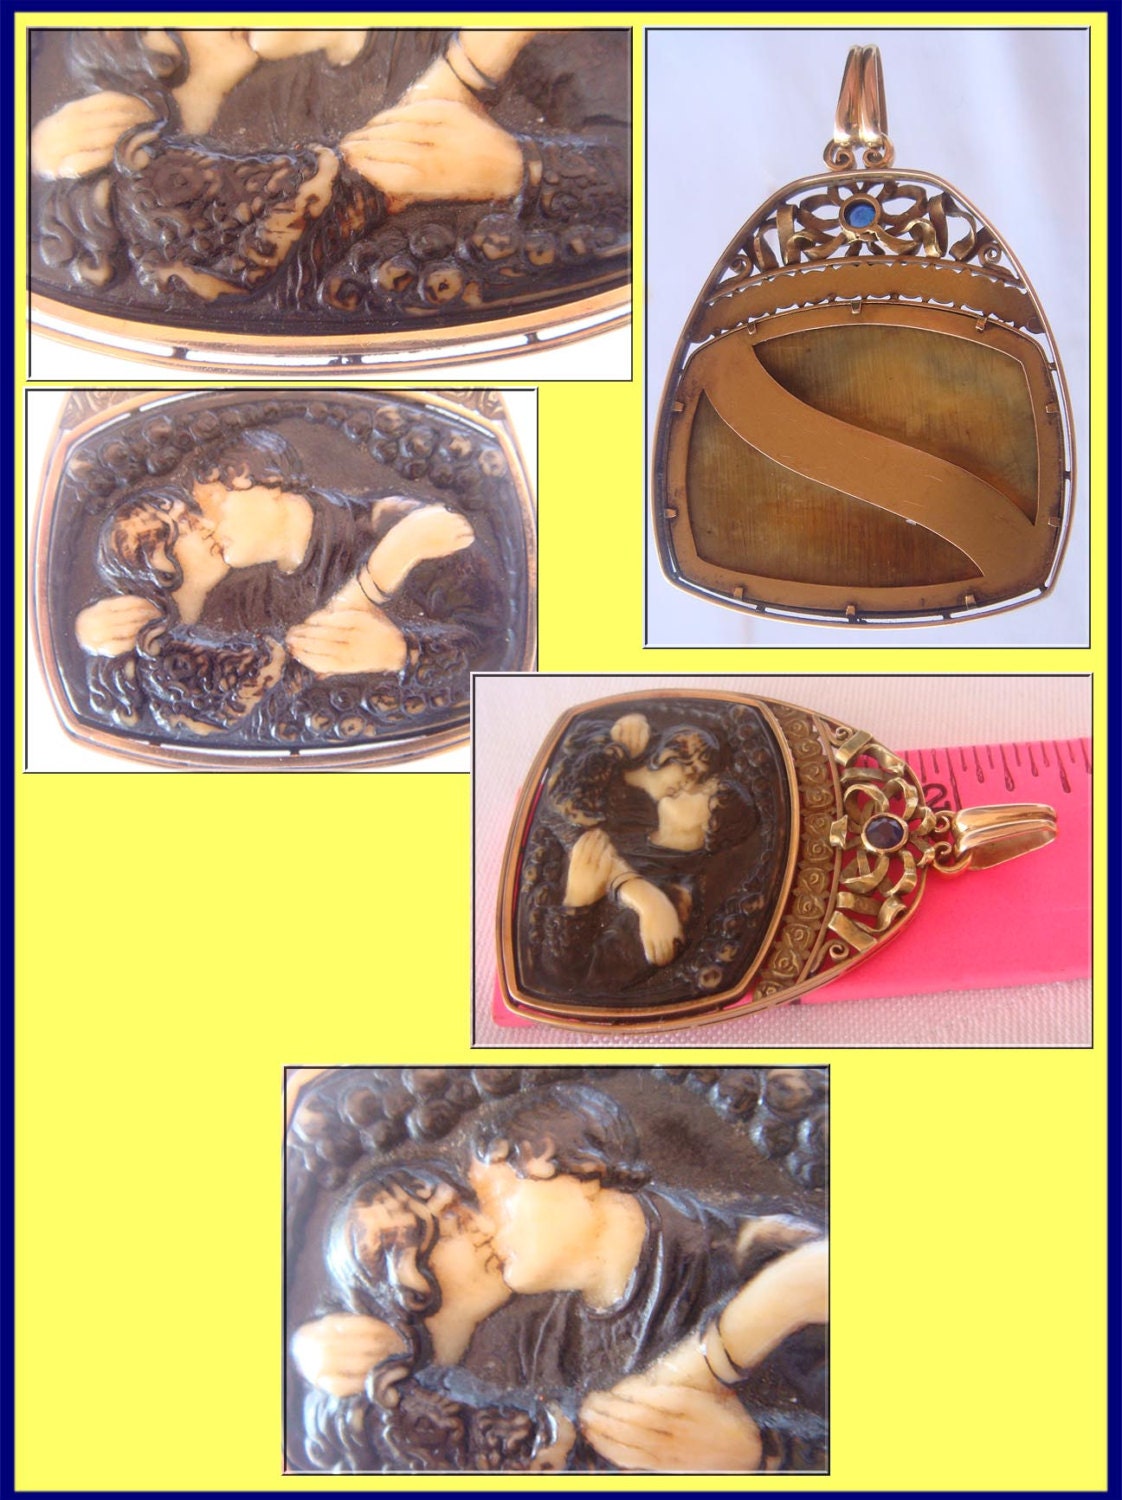 Antique Arts Crafts / Nouveau 18k Gold Sapphire Pendant (3998)